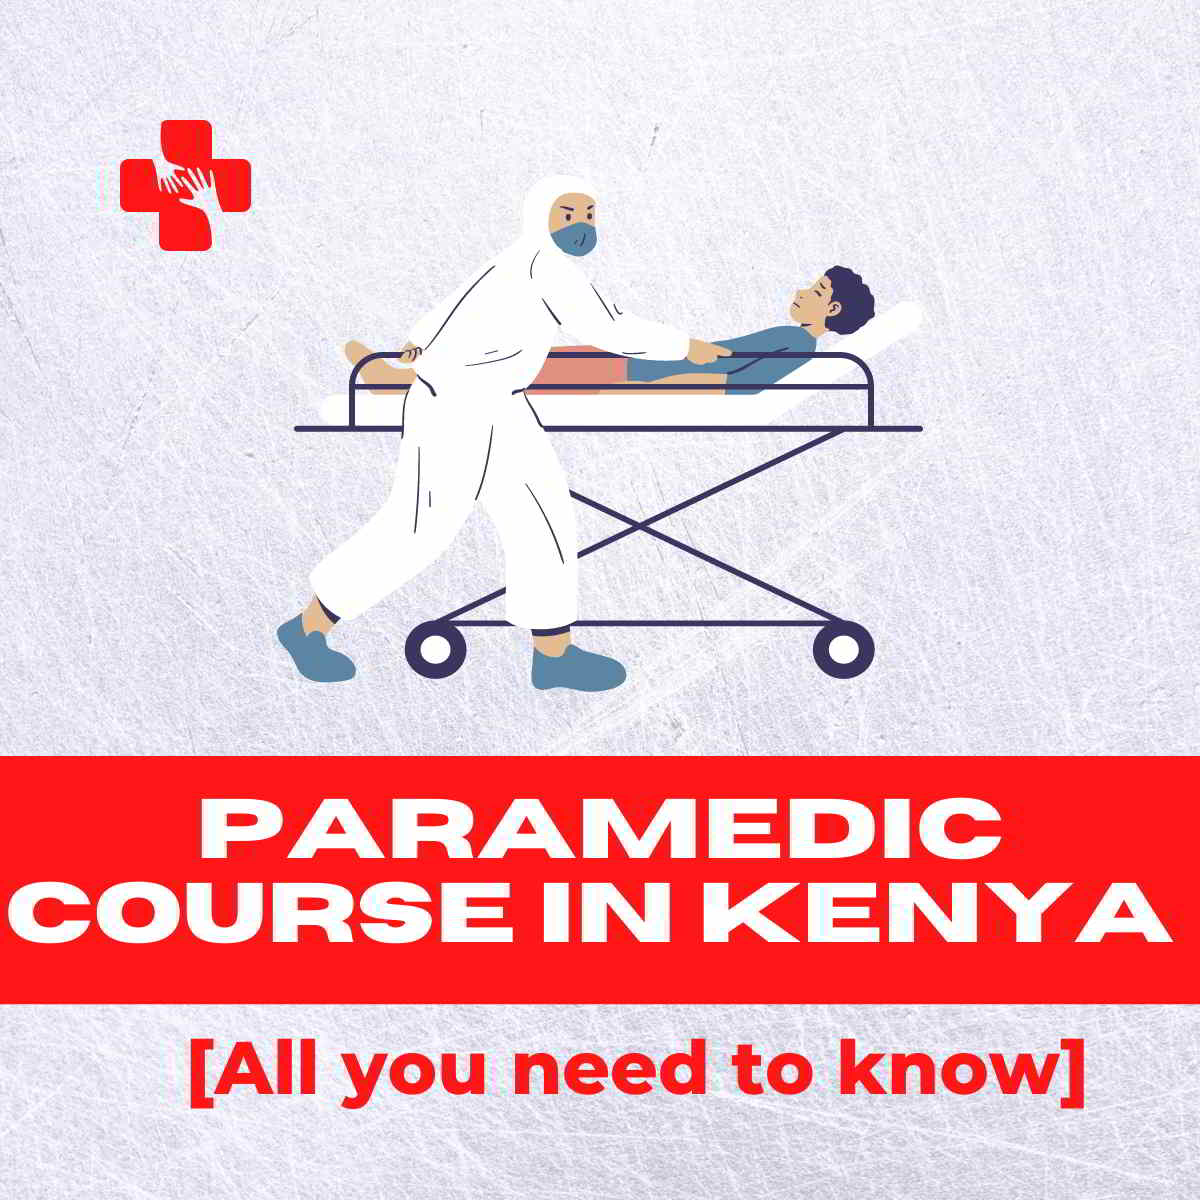 Paramedic course in Kenya